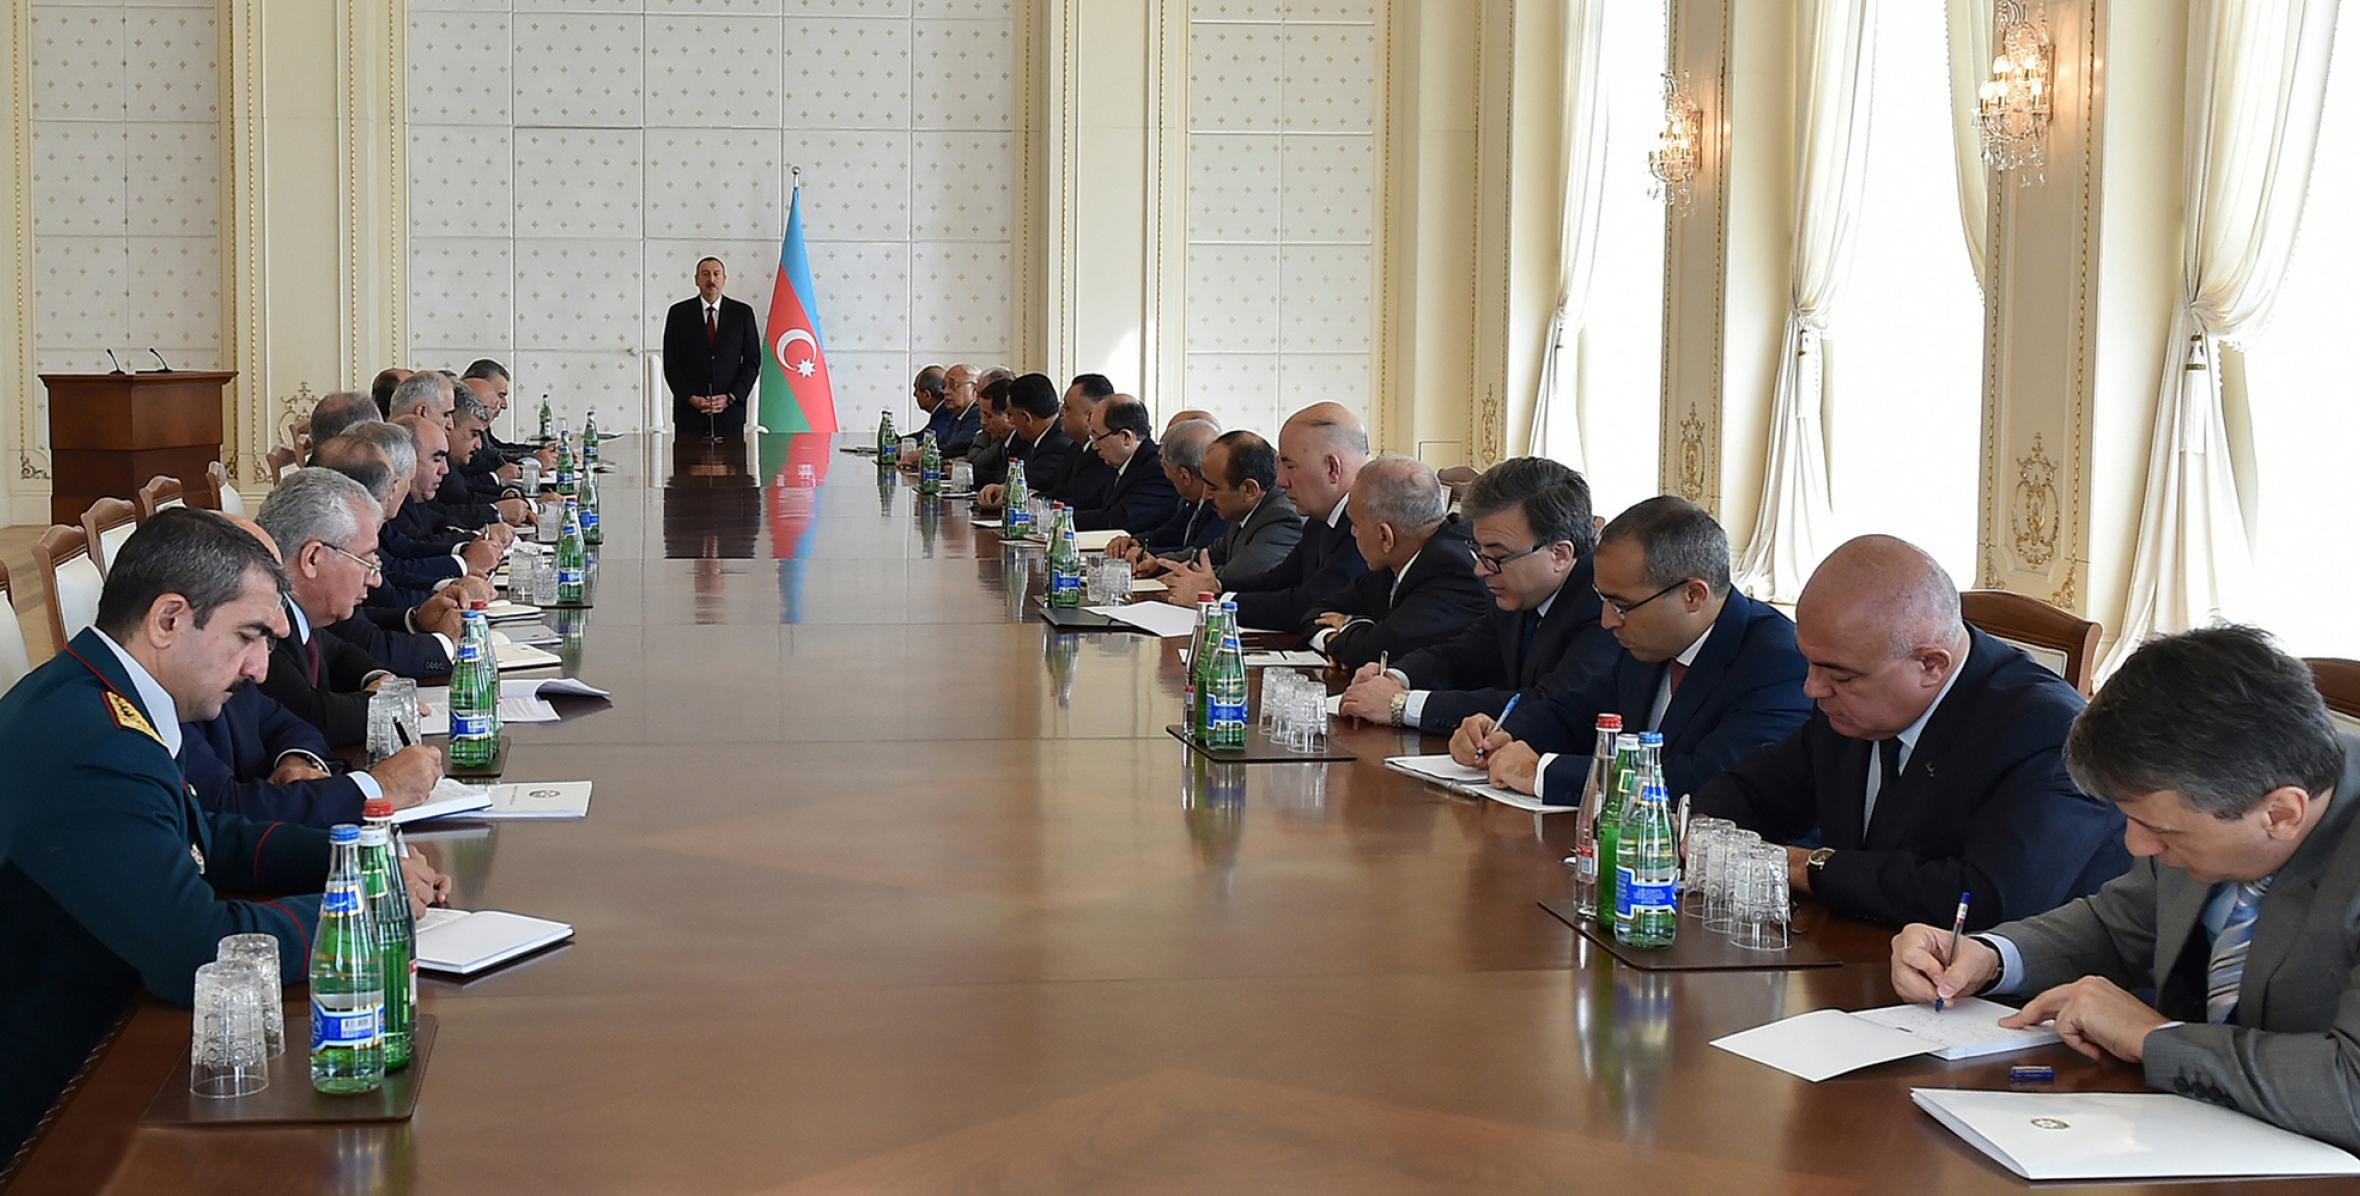 Вступительная речь Ильхама Алиева на заседании Кабинета Министров, посвященном итогам социально-экономического развития в первом полугодии 2015 года и предстоящим задачам